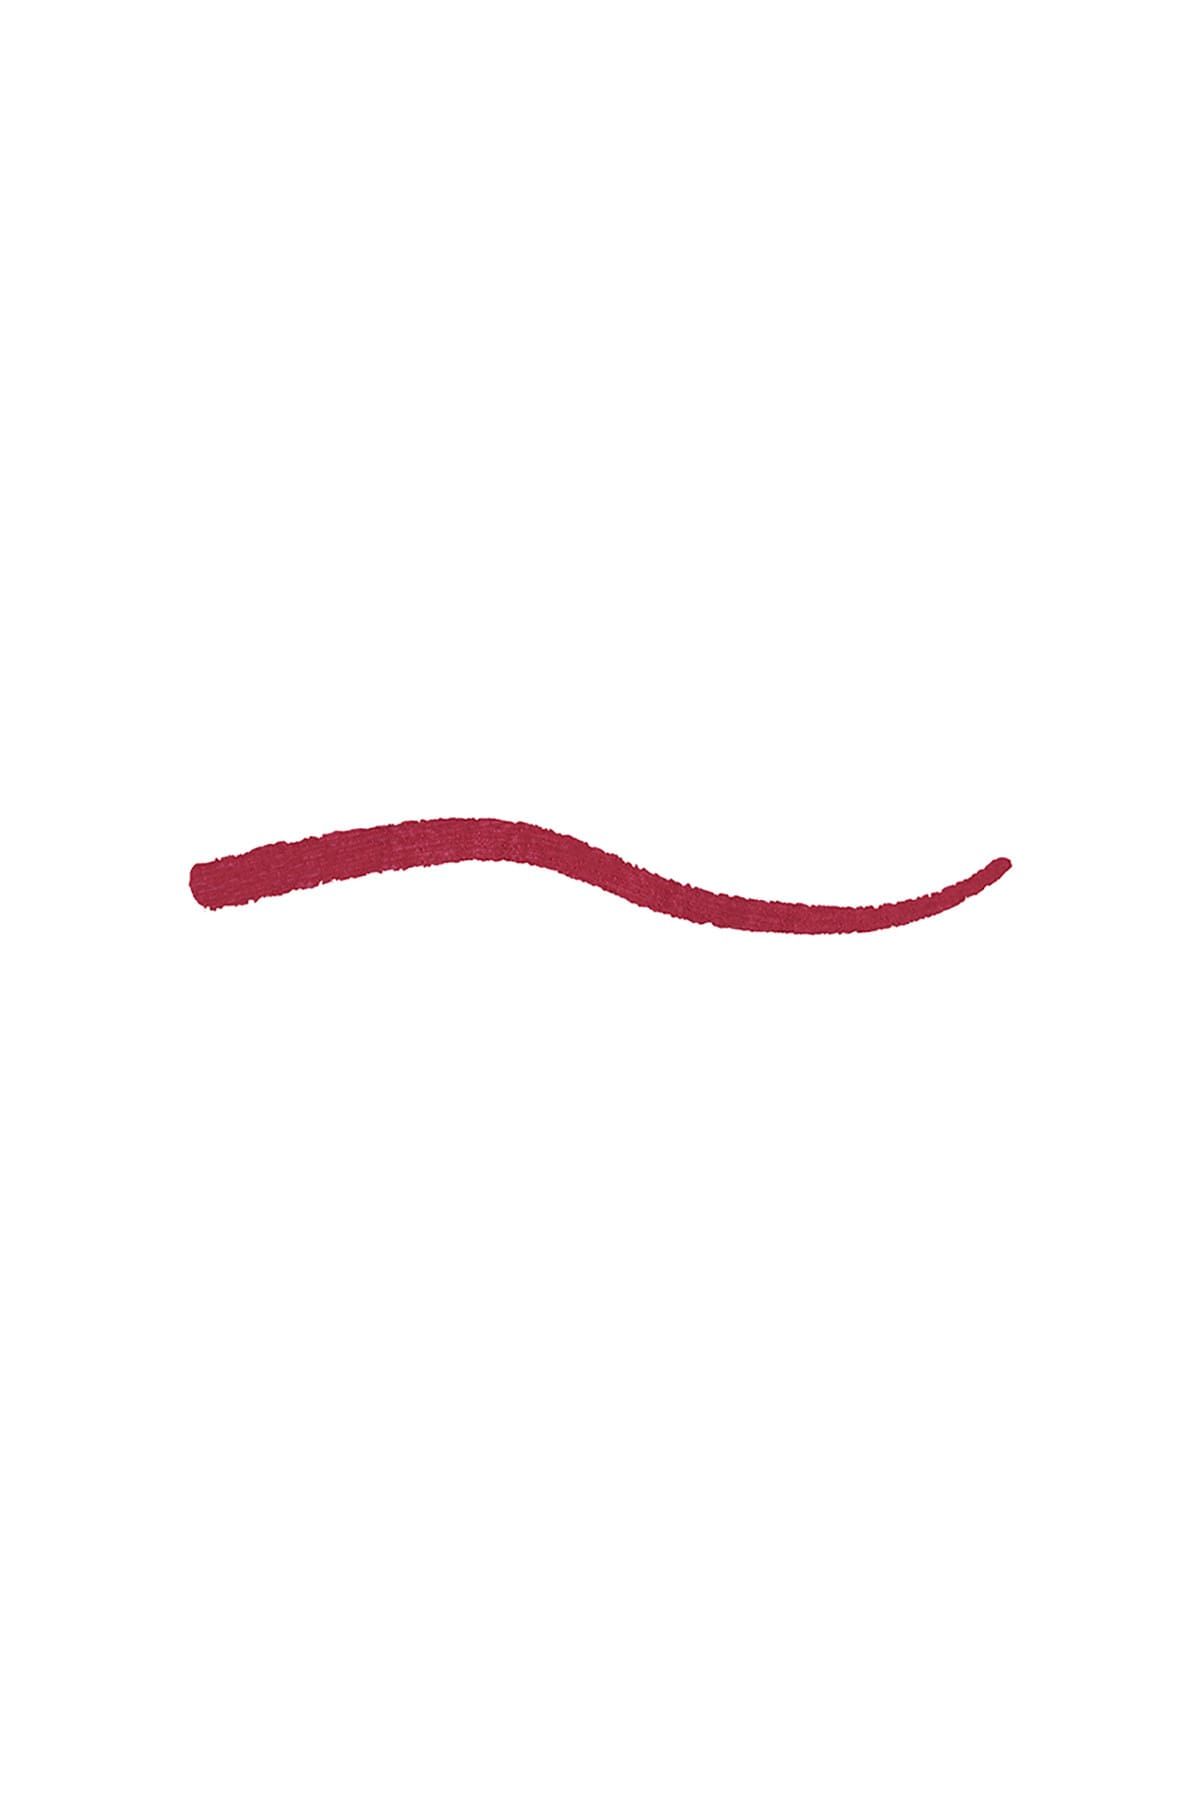 KIKO مداد لب Smart Fusion بافت نرم و روان شماره 528 رنگ قرمز انگوری